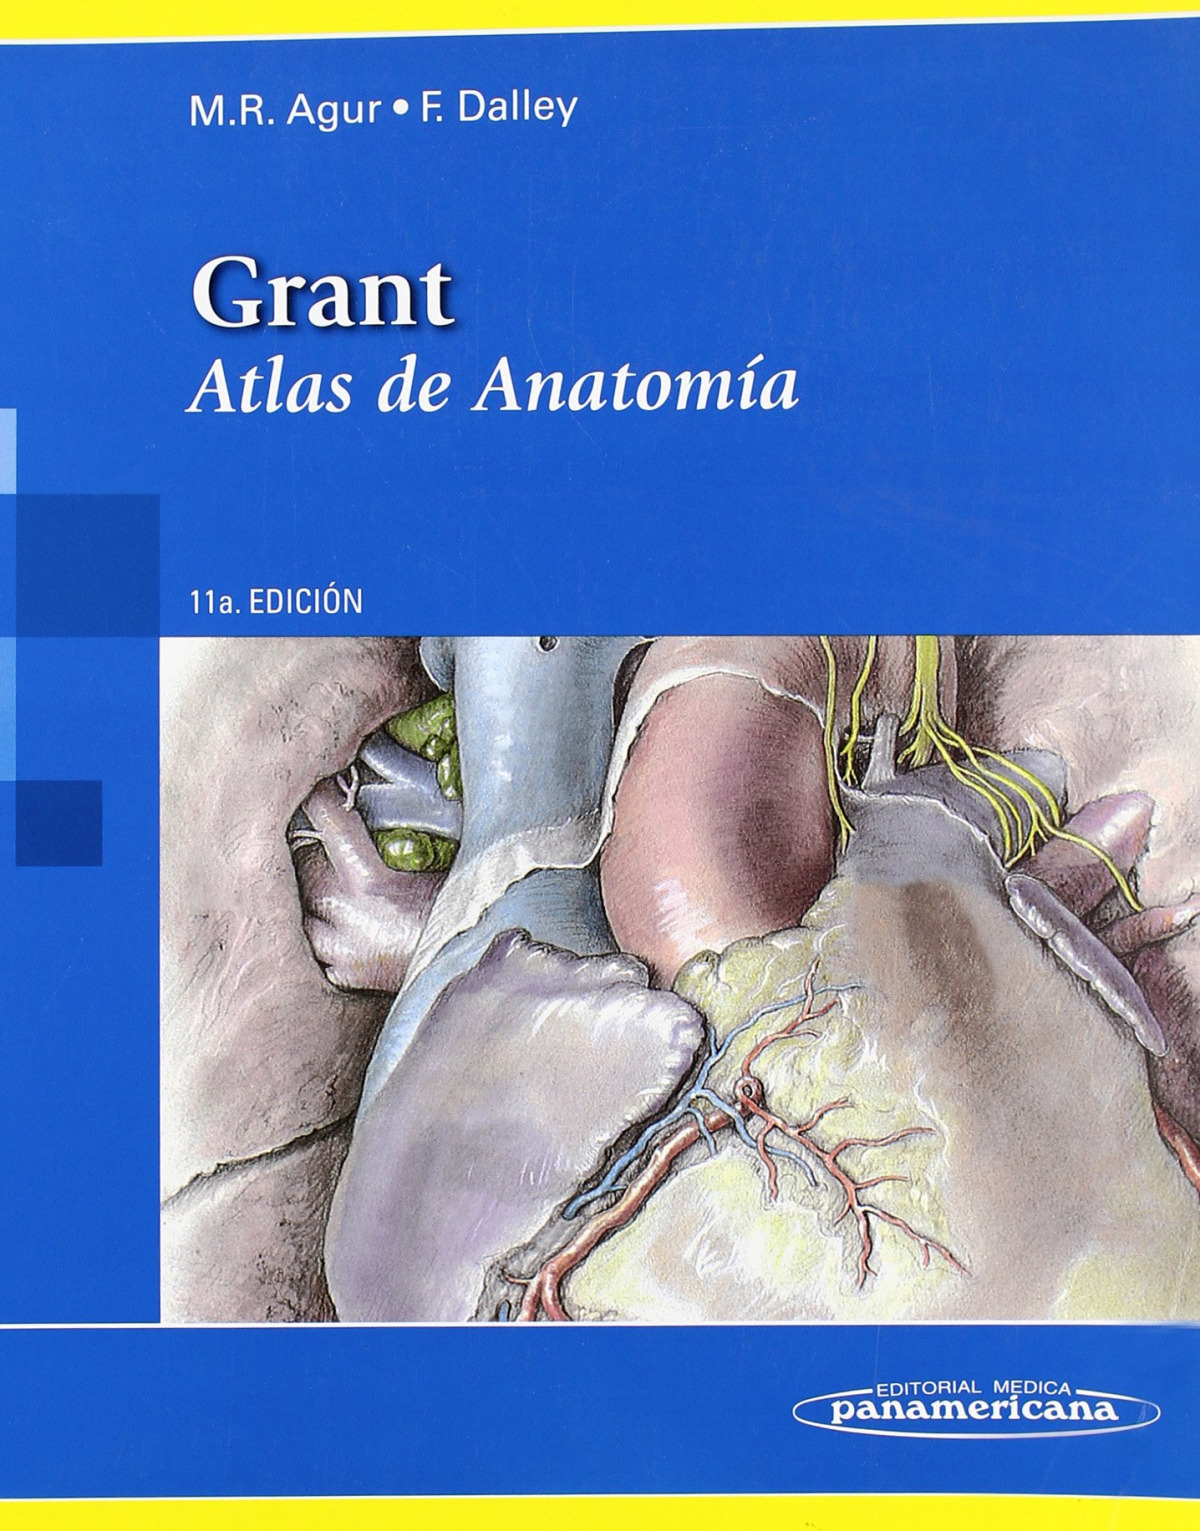 Grant.atlas de anatomía - Agur/Dalley